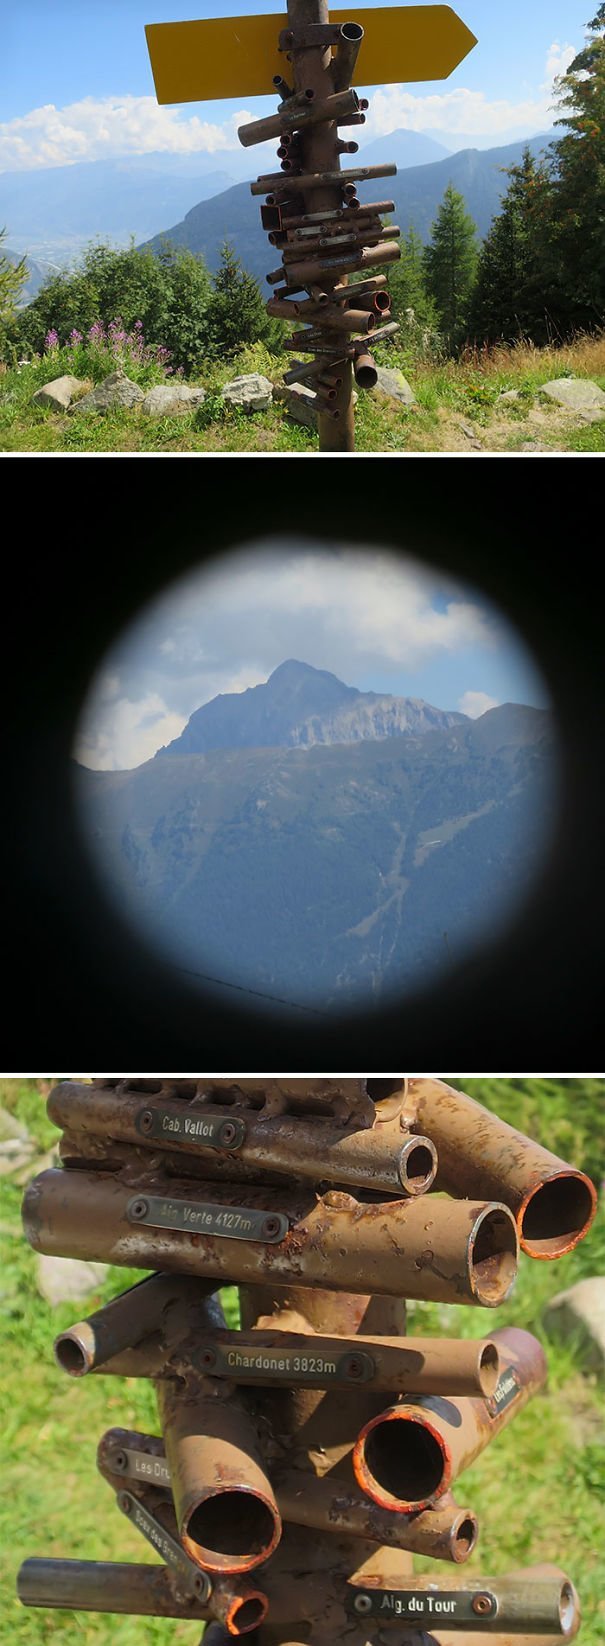 Подзорные трубы для рассматривания окрестных гор в Швейцарии. Каждая труба направлена на определенную гору